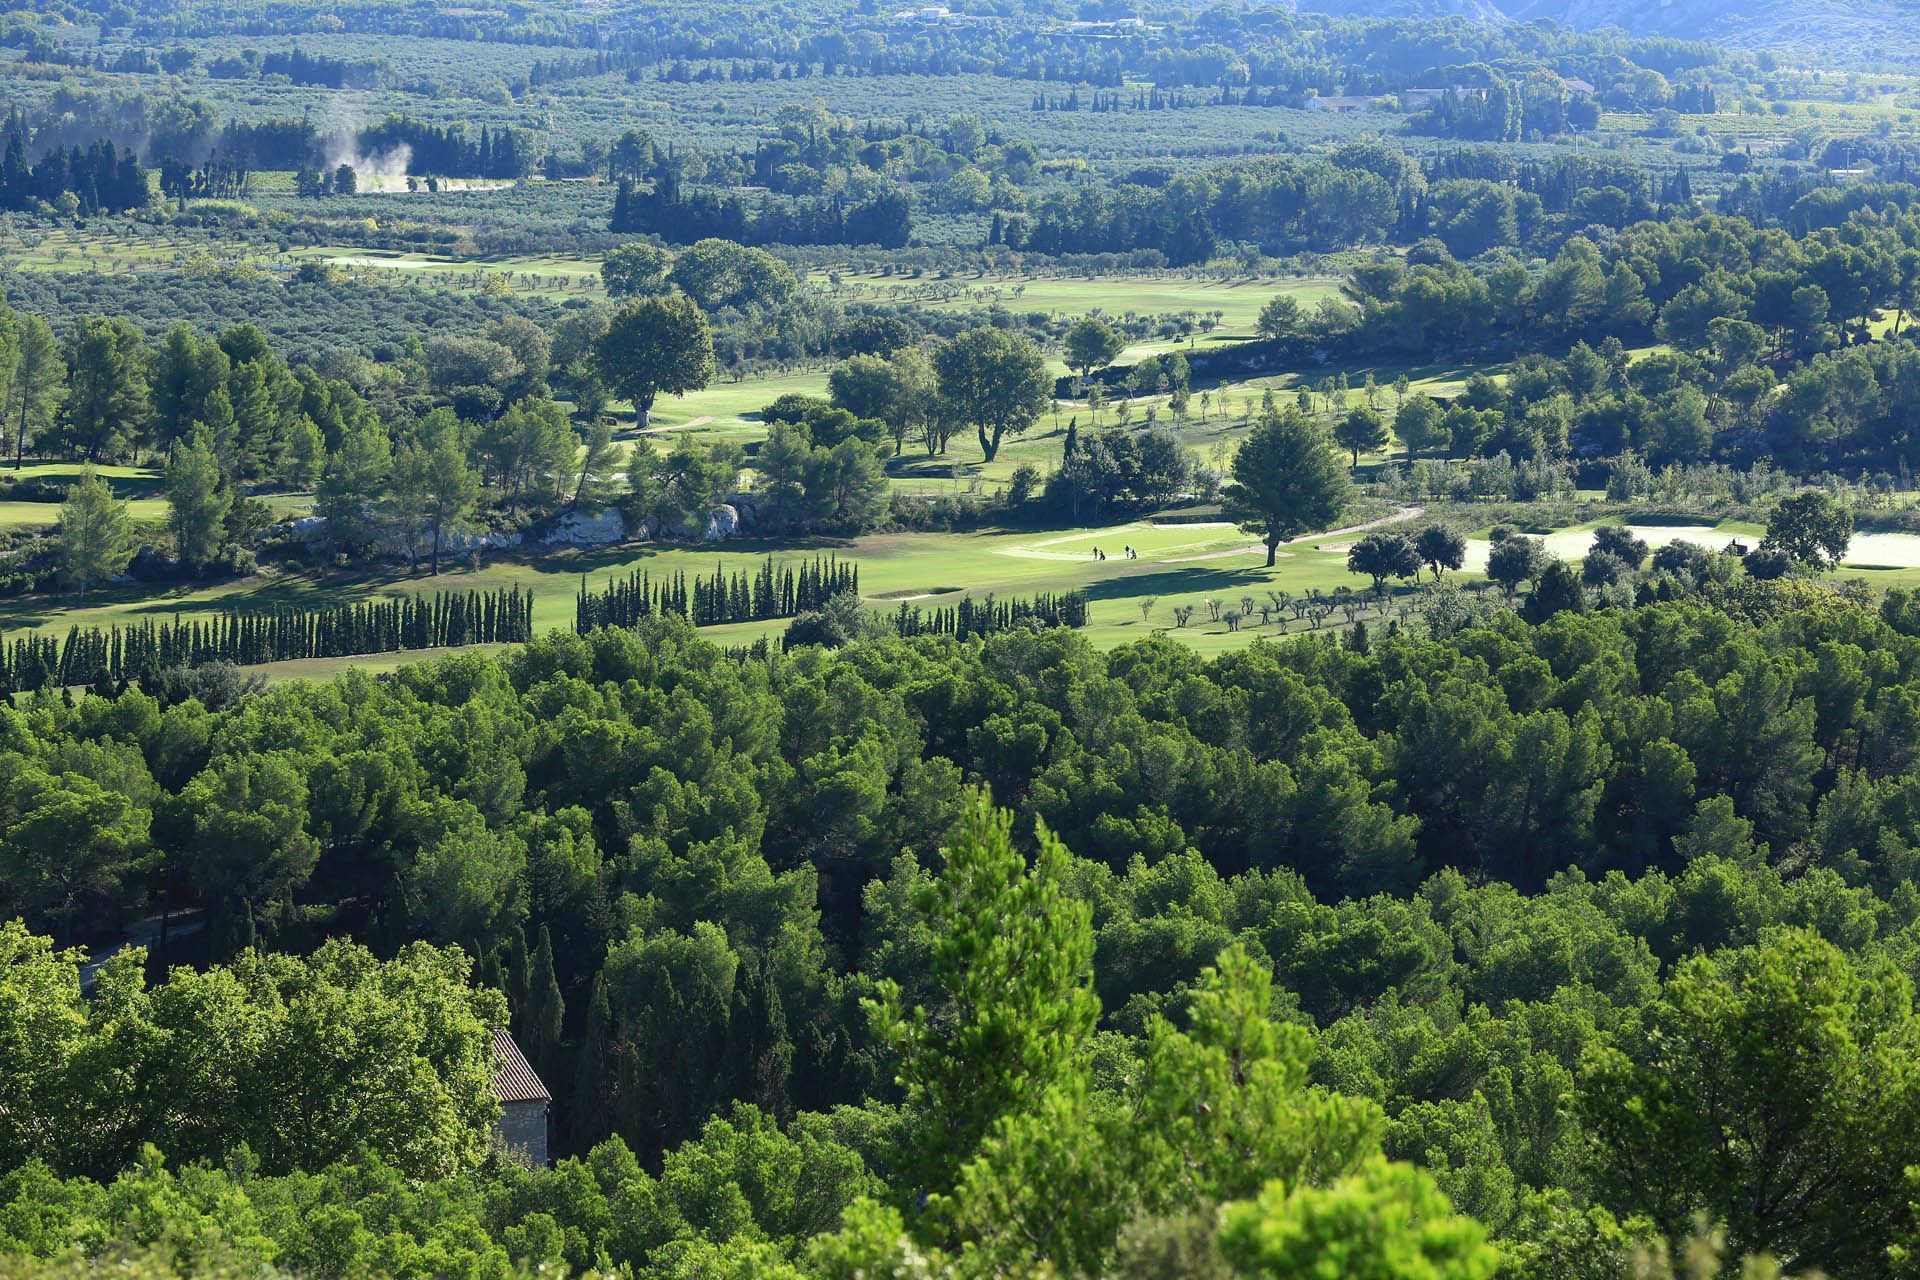 Aerial View near Domaine de Manville